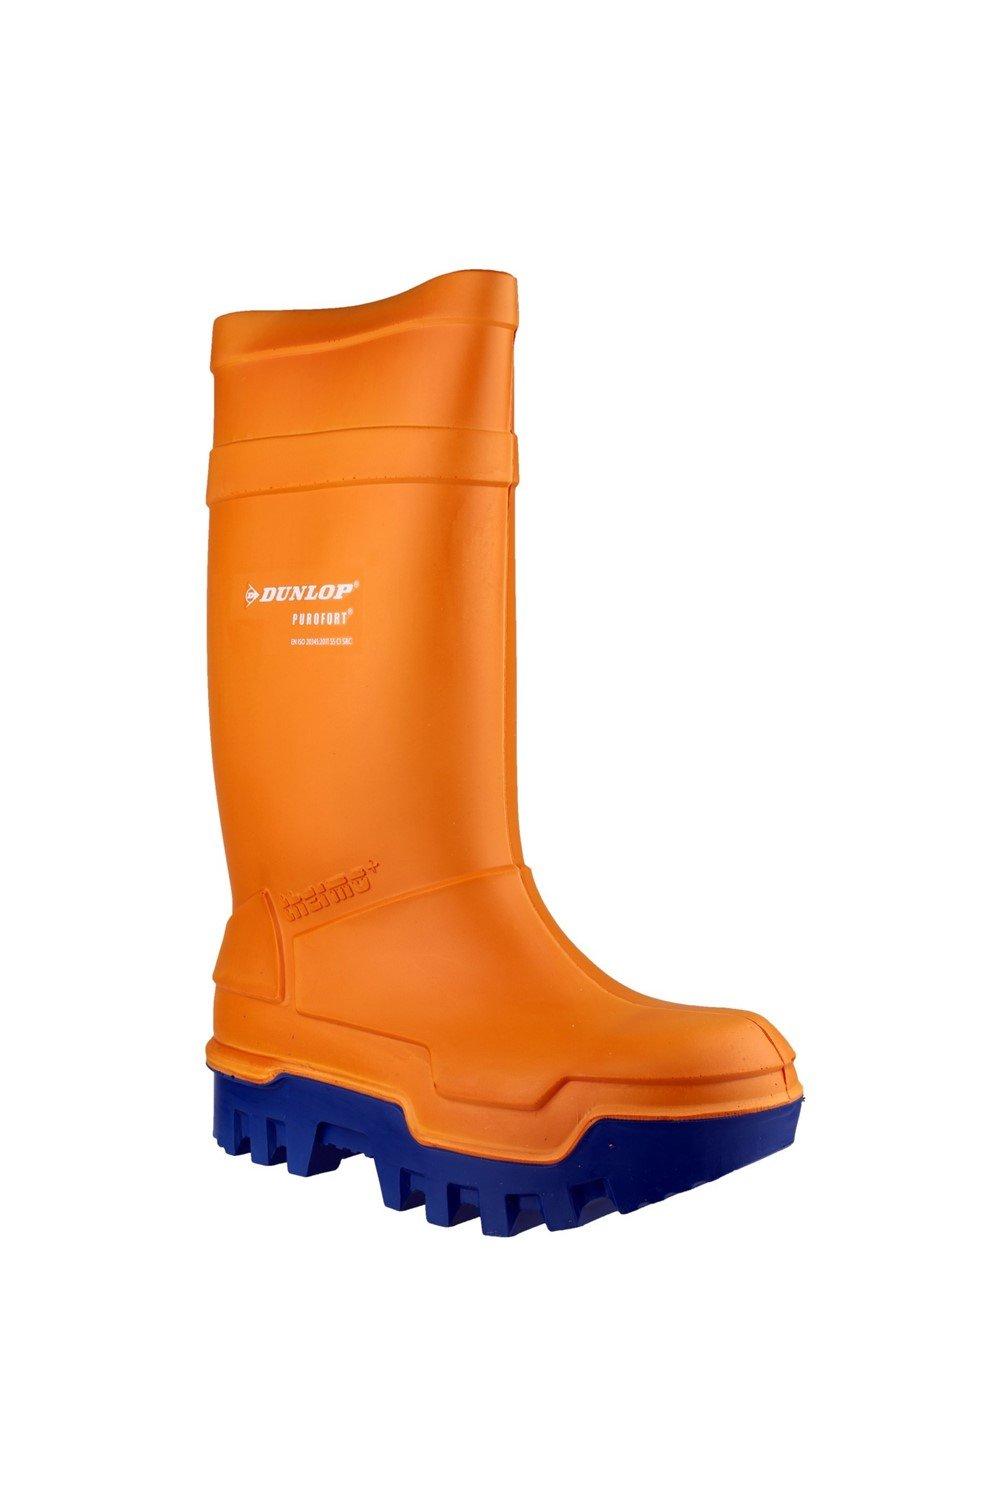 Защитные резиновые сапоги Purofort Thermo+ Dunlop, оранжевый